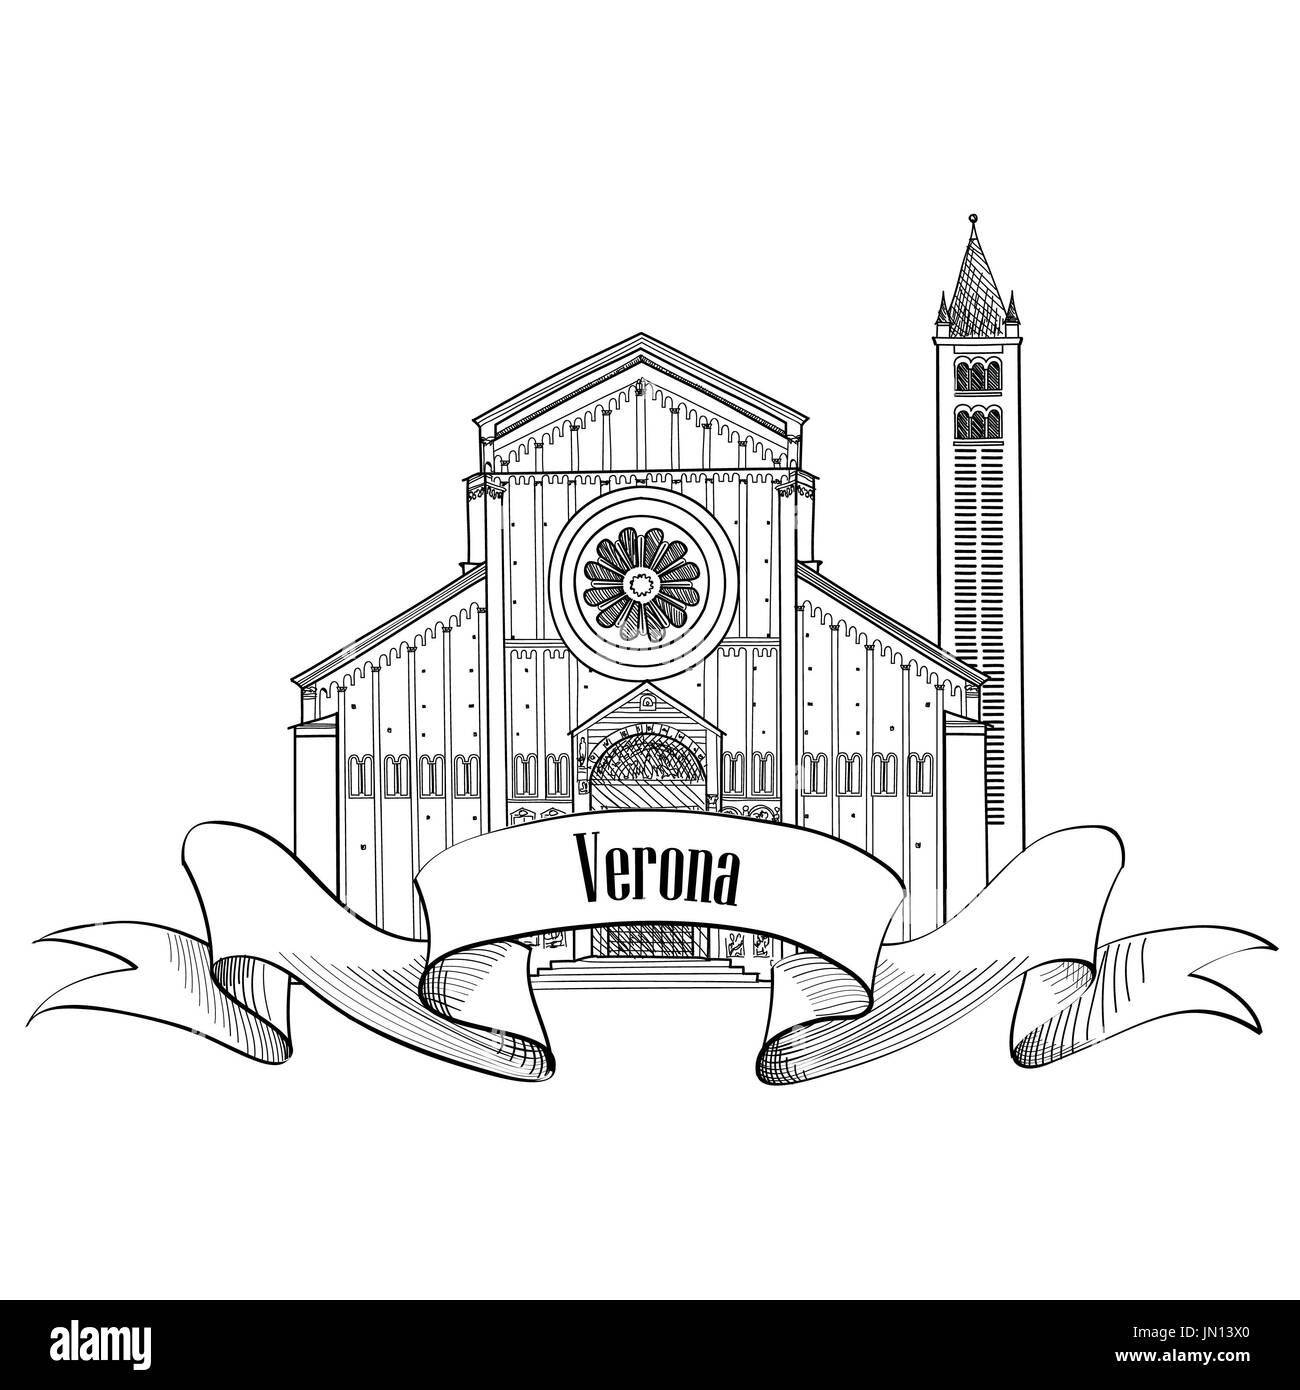 Verona-Stadt-Label. Reisen Sie Italien-Symbol. Berühmte italienische Gebäude Kirche von San Zeno skizzieren. Sightseeing-Symbol. Stockfoto